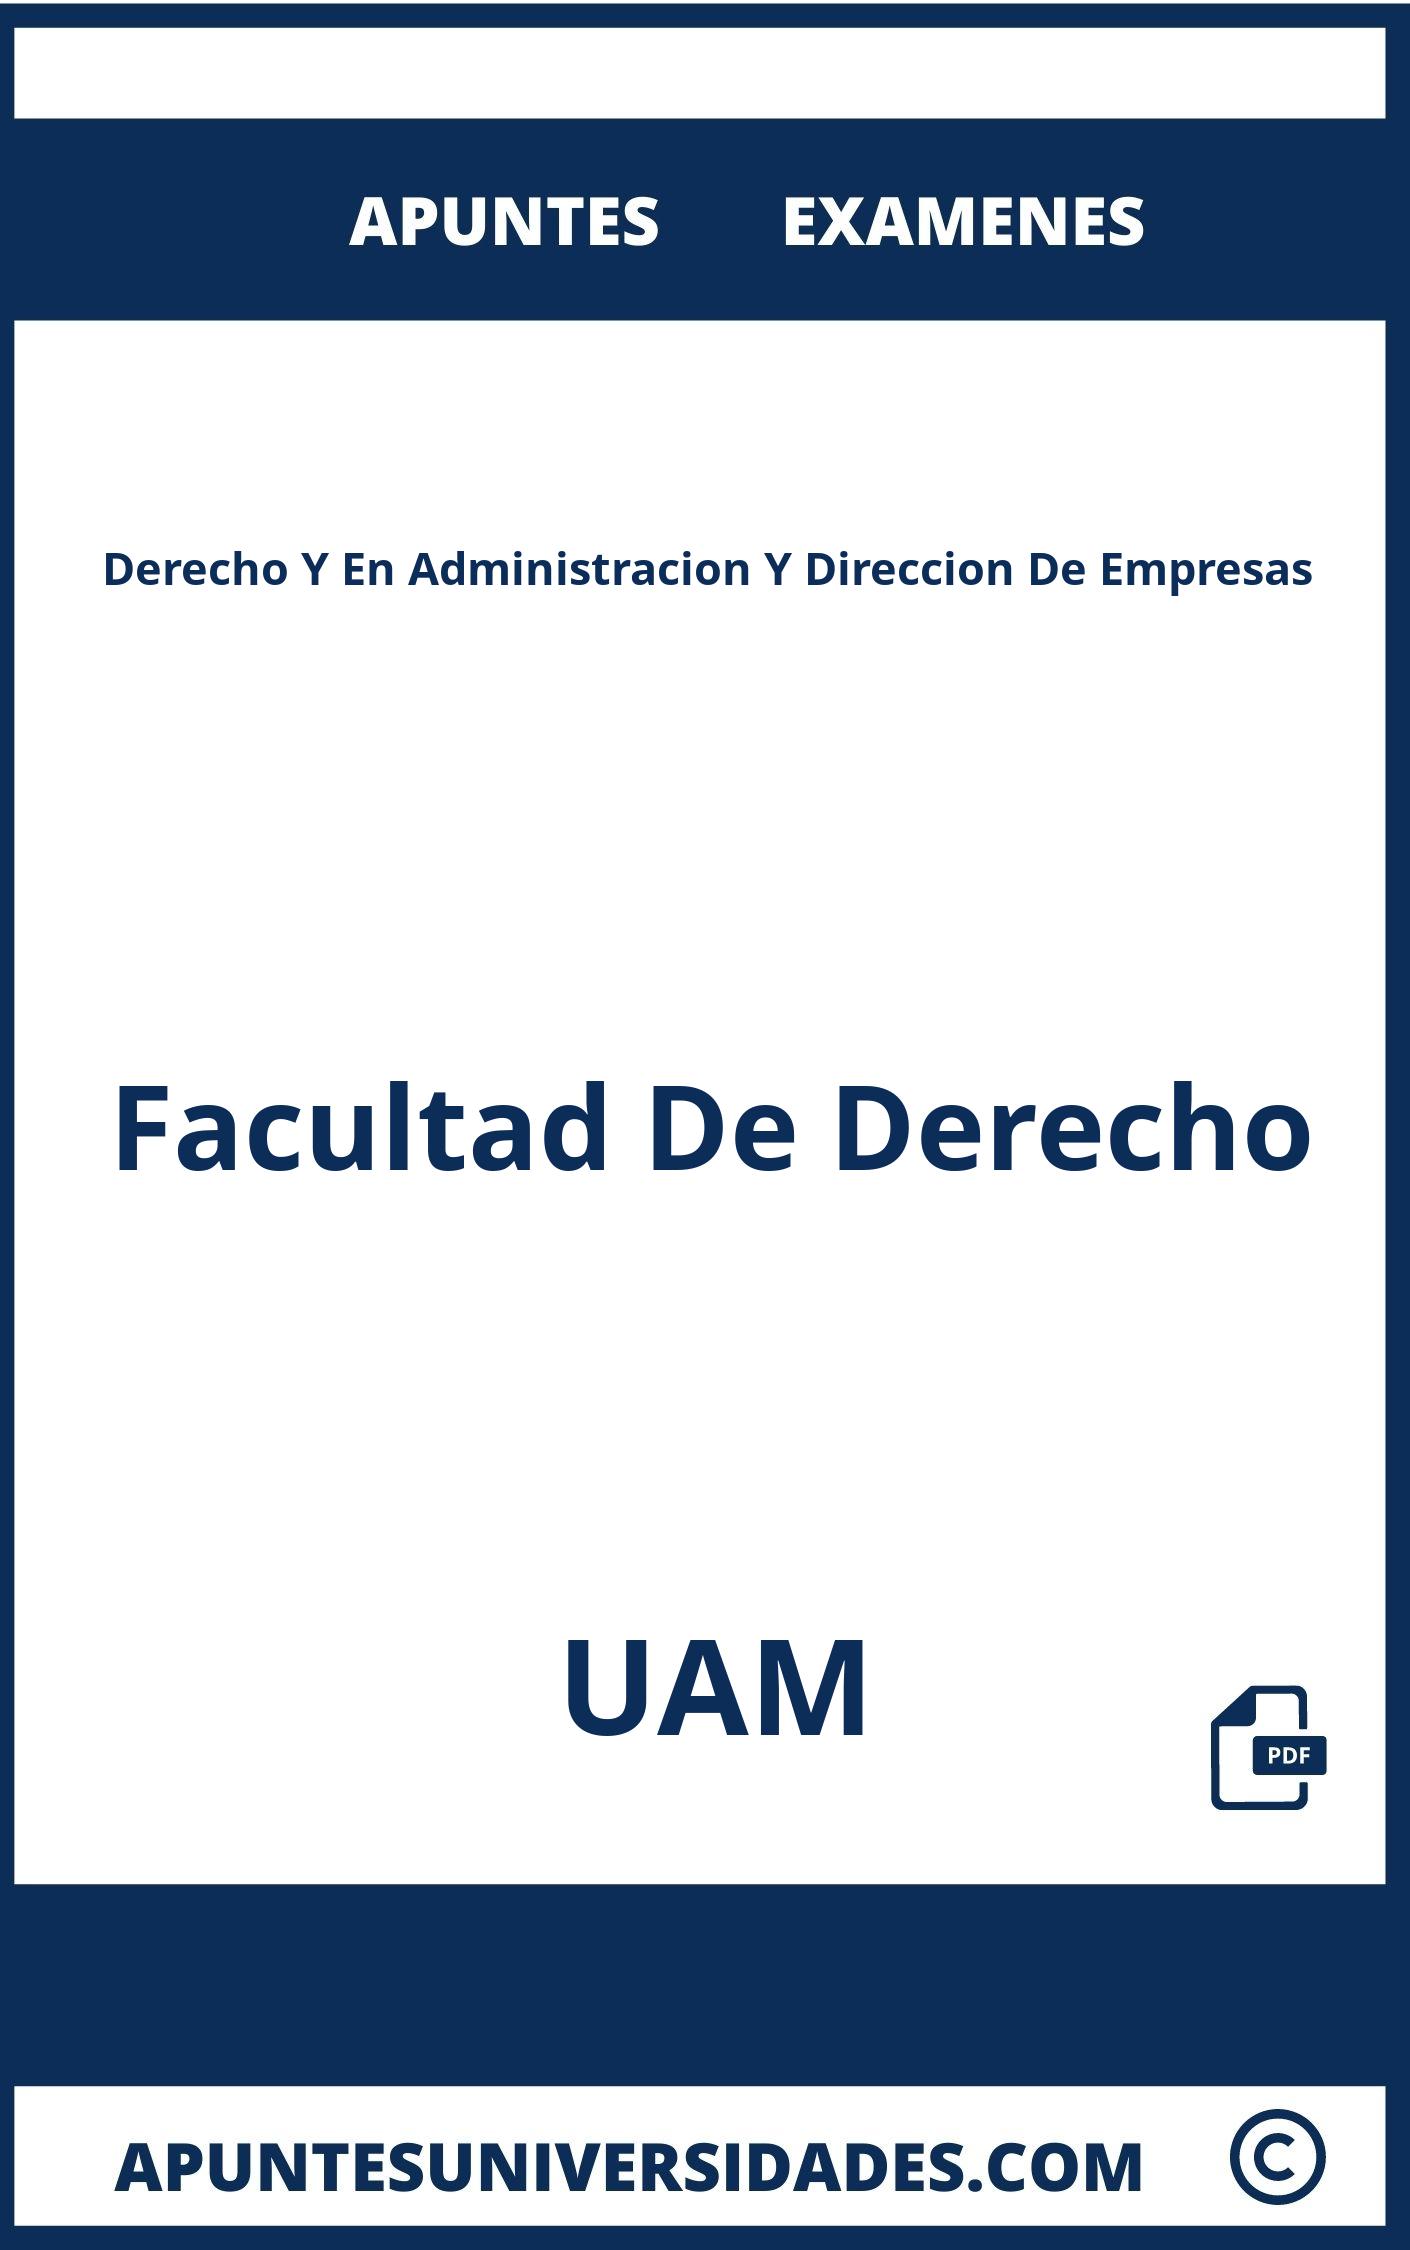 Apuntes y Examenes de Derecho Y En Administracion Y Direccion De Empresas UAM